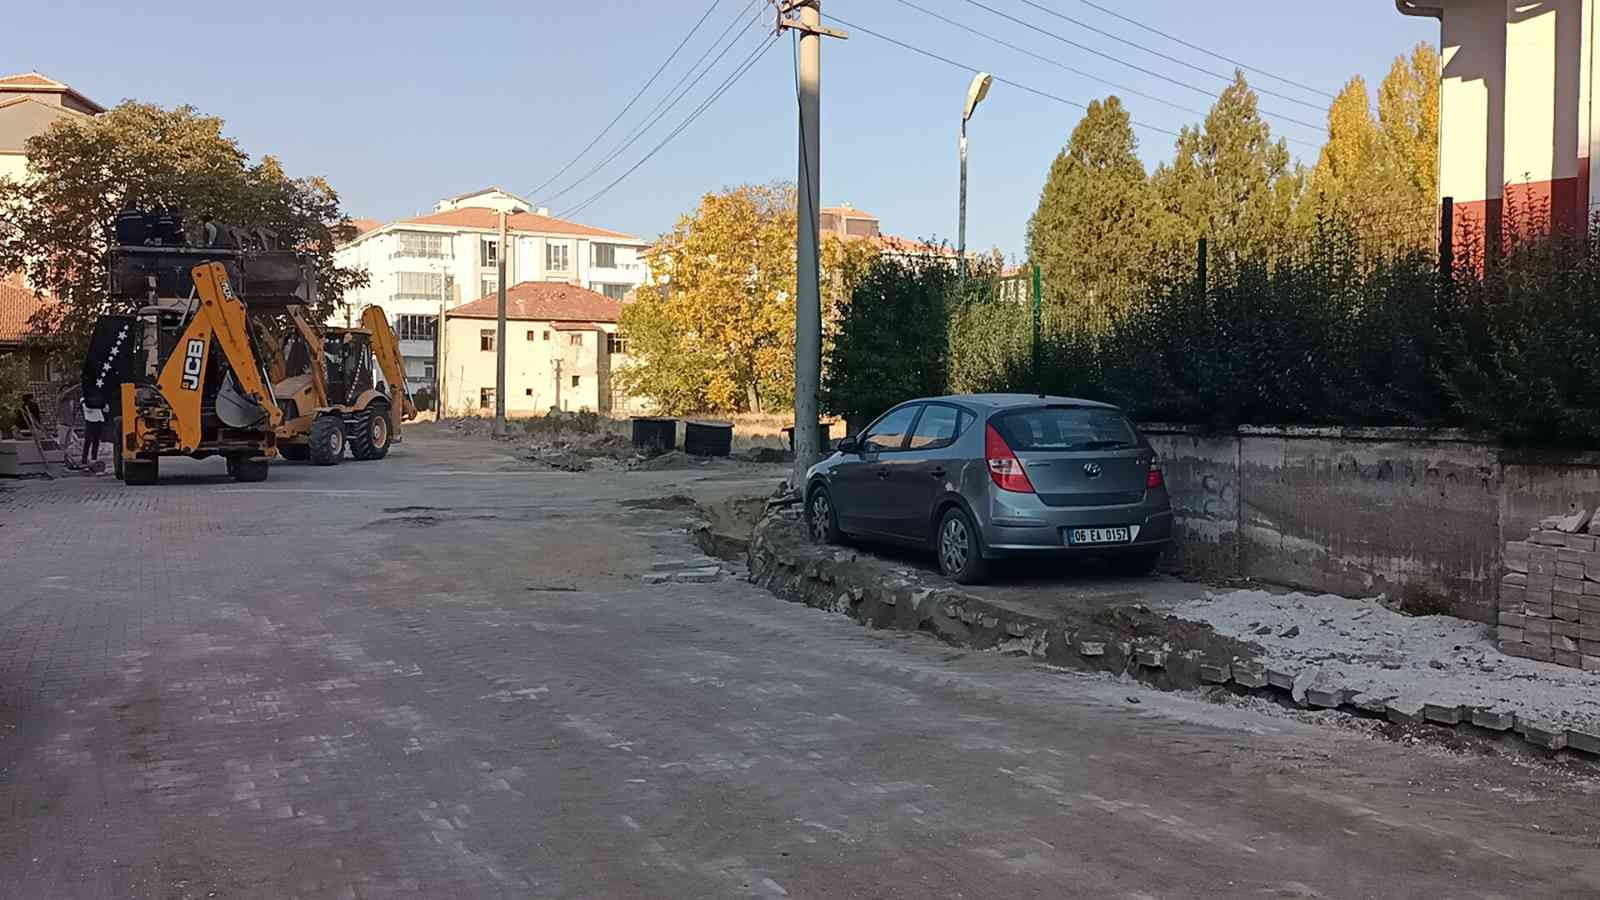 Kırşehir’de sahibine ulaşılamayan otomobil kazı alanının ortasında kaldı #kirsehir